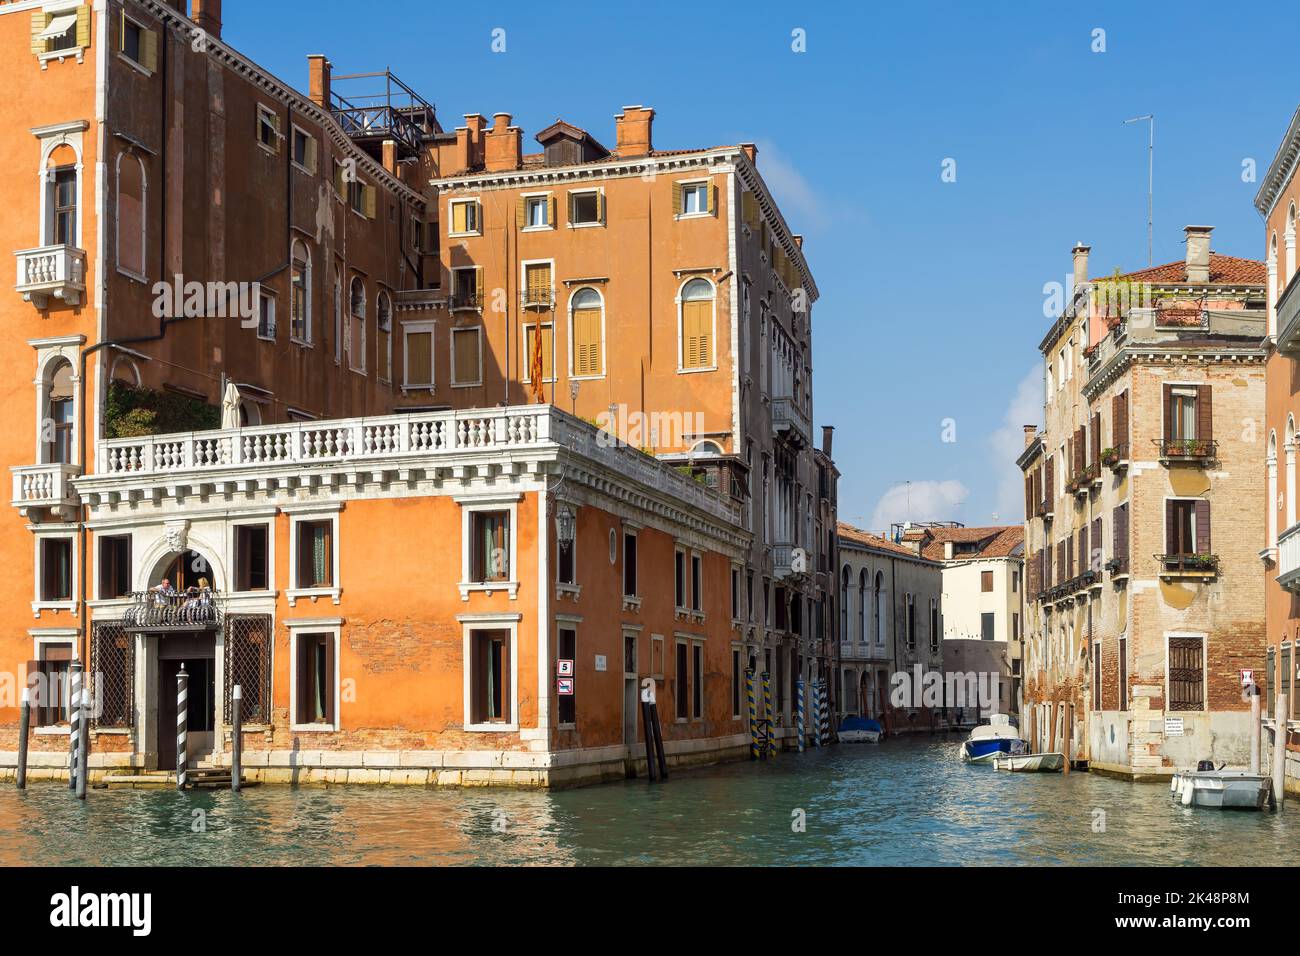 VENISE, ITALIE - OCTOBRE 12 : bâtiments colorés le long d'un canal à Venise sur 12 octobre 2014. Deux personnes non identifiées. Banque D'Images